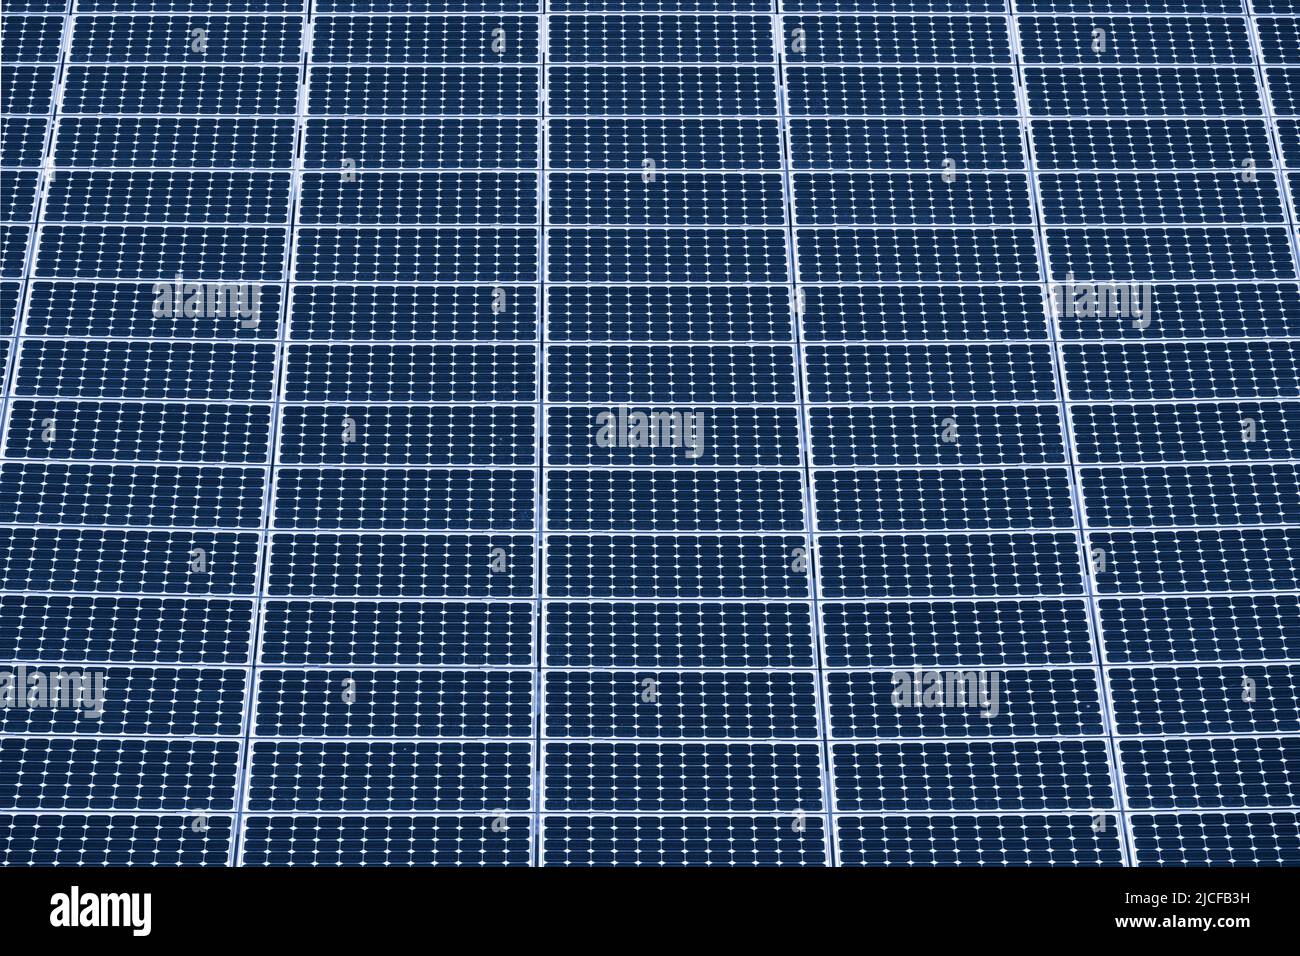 Pannelli solari per la generazione di energia Foto Stock